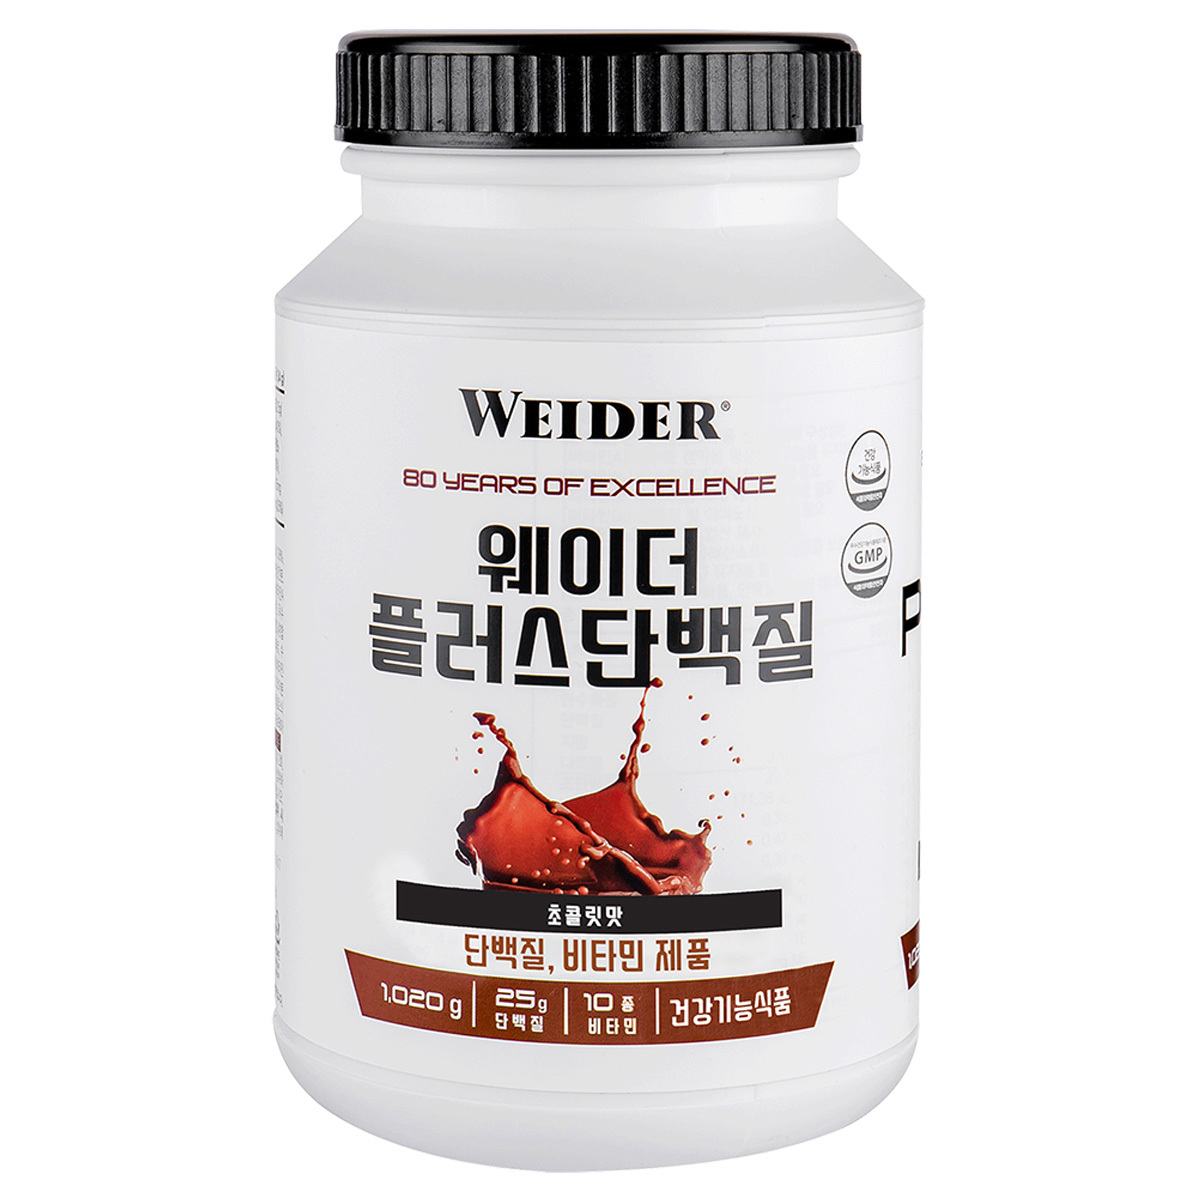 웨이더 플러스 단백질 1,020g - 초콜릿 맛